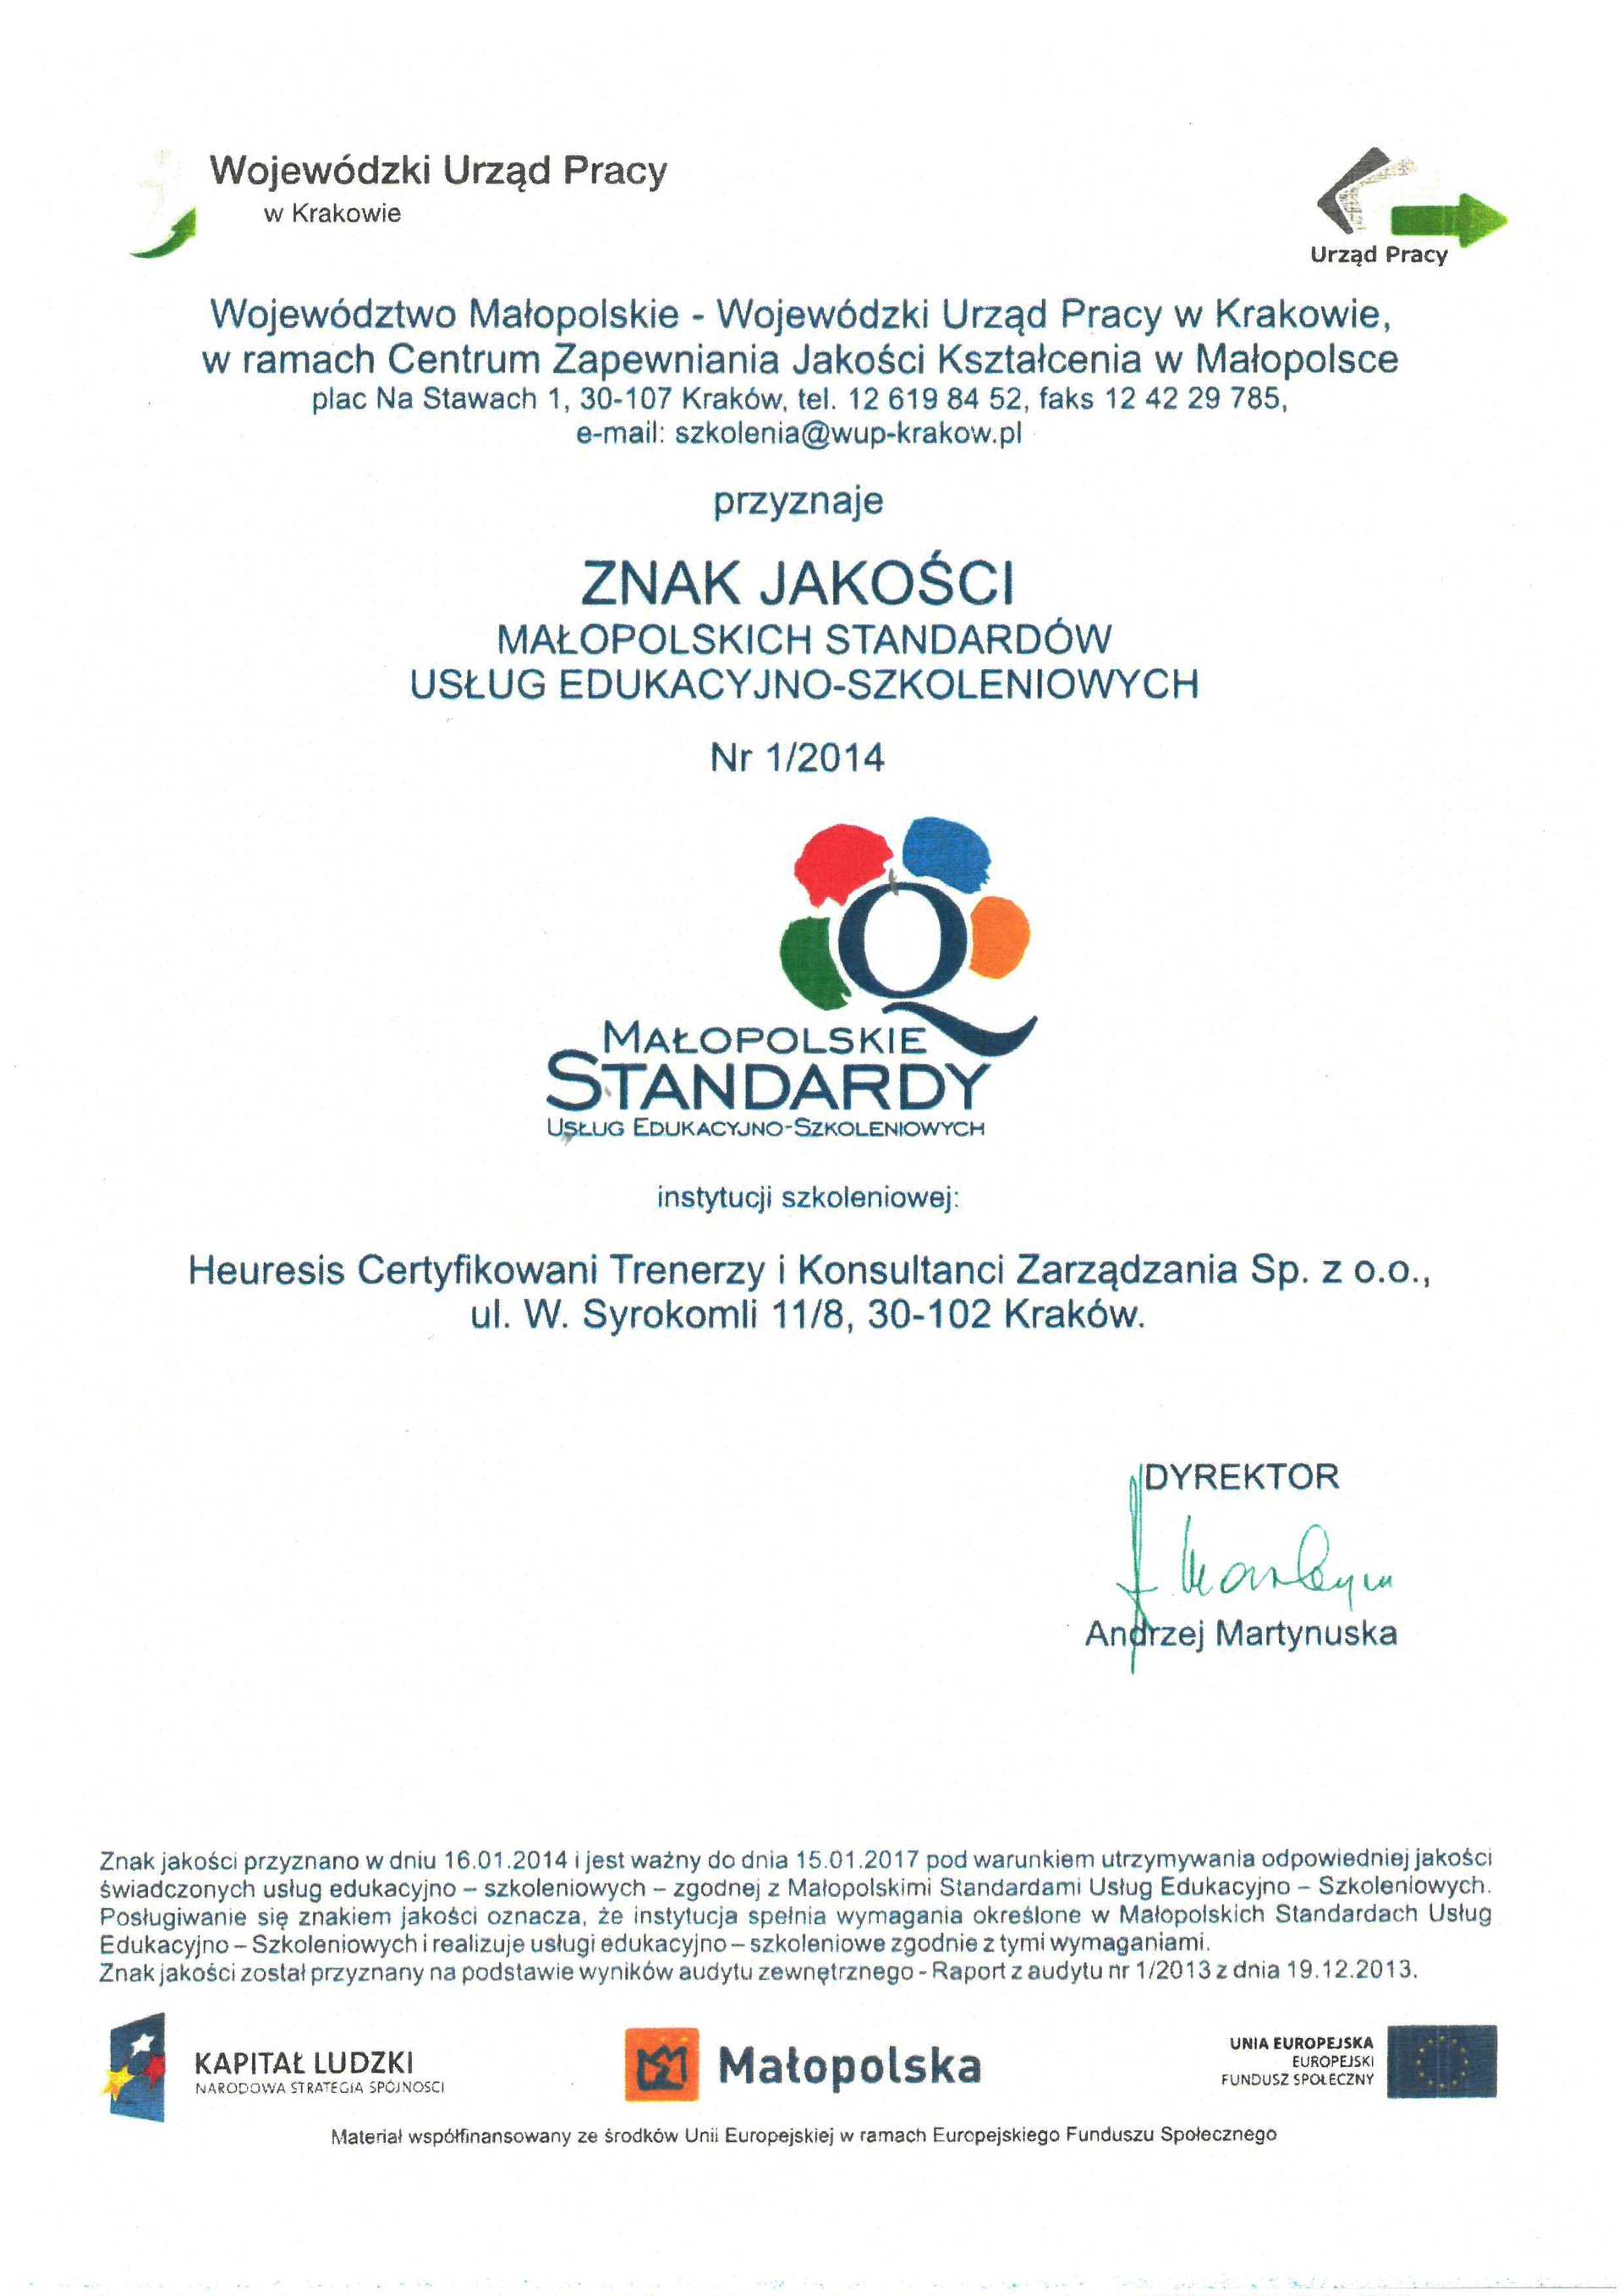 Certyfikat znak jakości małopolskich standardów usług edukacyjno-szkoleniowych (MSUES) dla Heuresis o numerze 1/2014